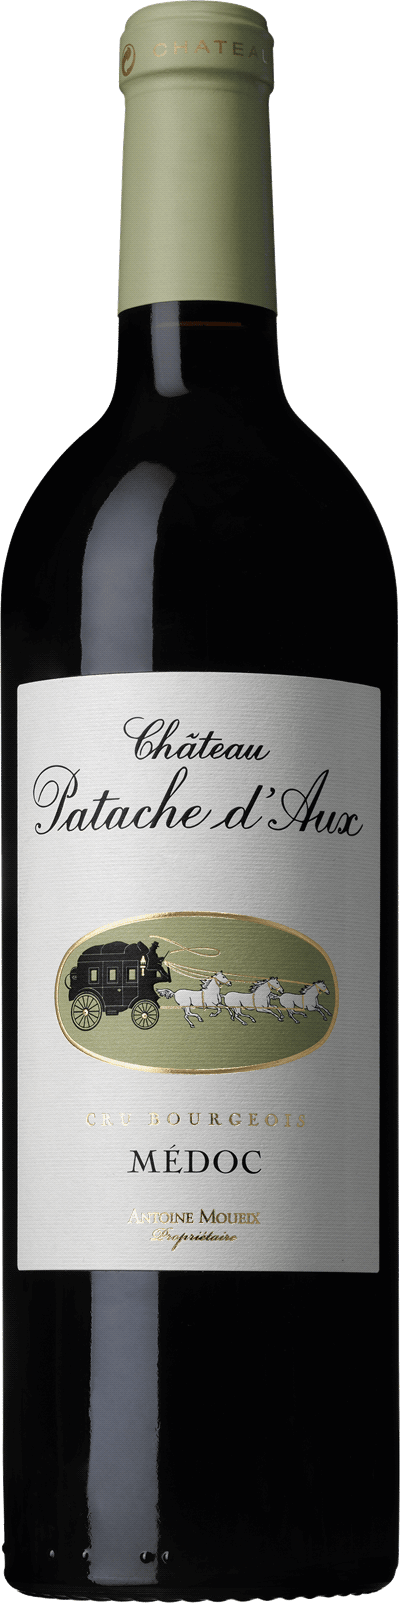 Wine Table Chateau Patache D'Aux